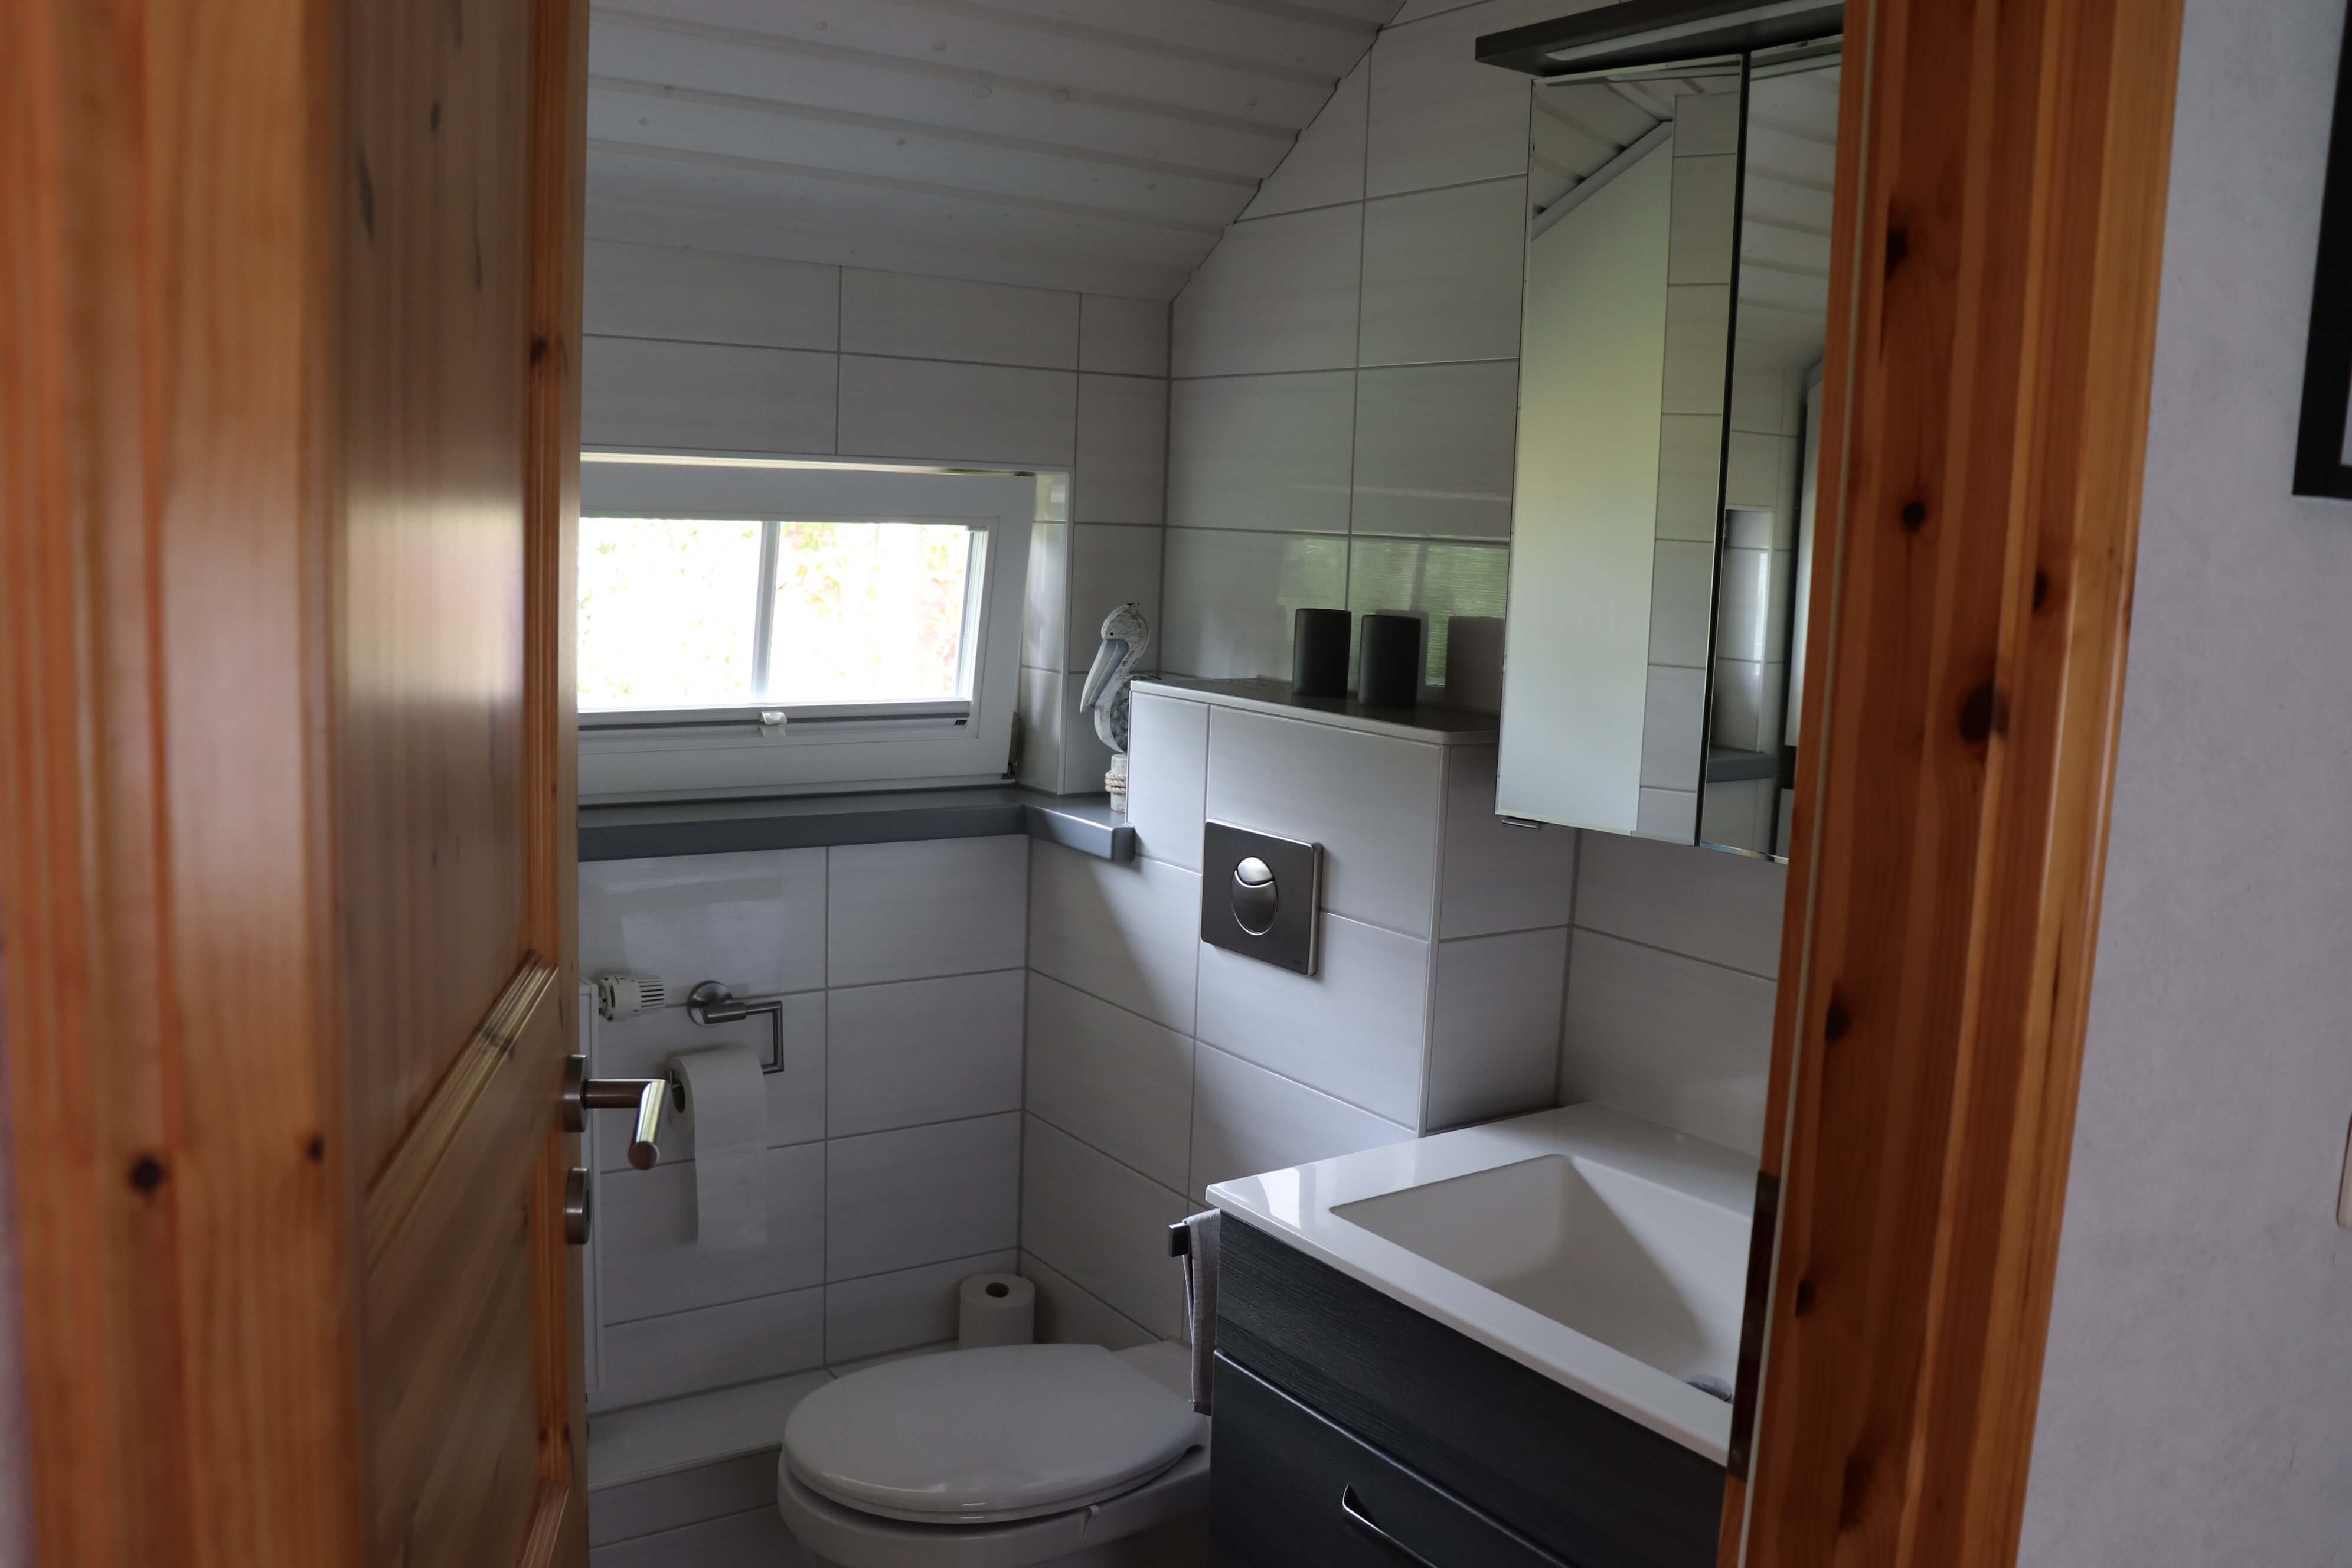 Bad mit weißen Fliesen und einer weiß gestrichenen Holzdecke inklusive Toilette, Heizung, Spiegel und Waschbecken in rotbrauen Holzoptik.